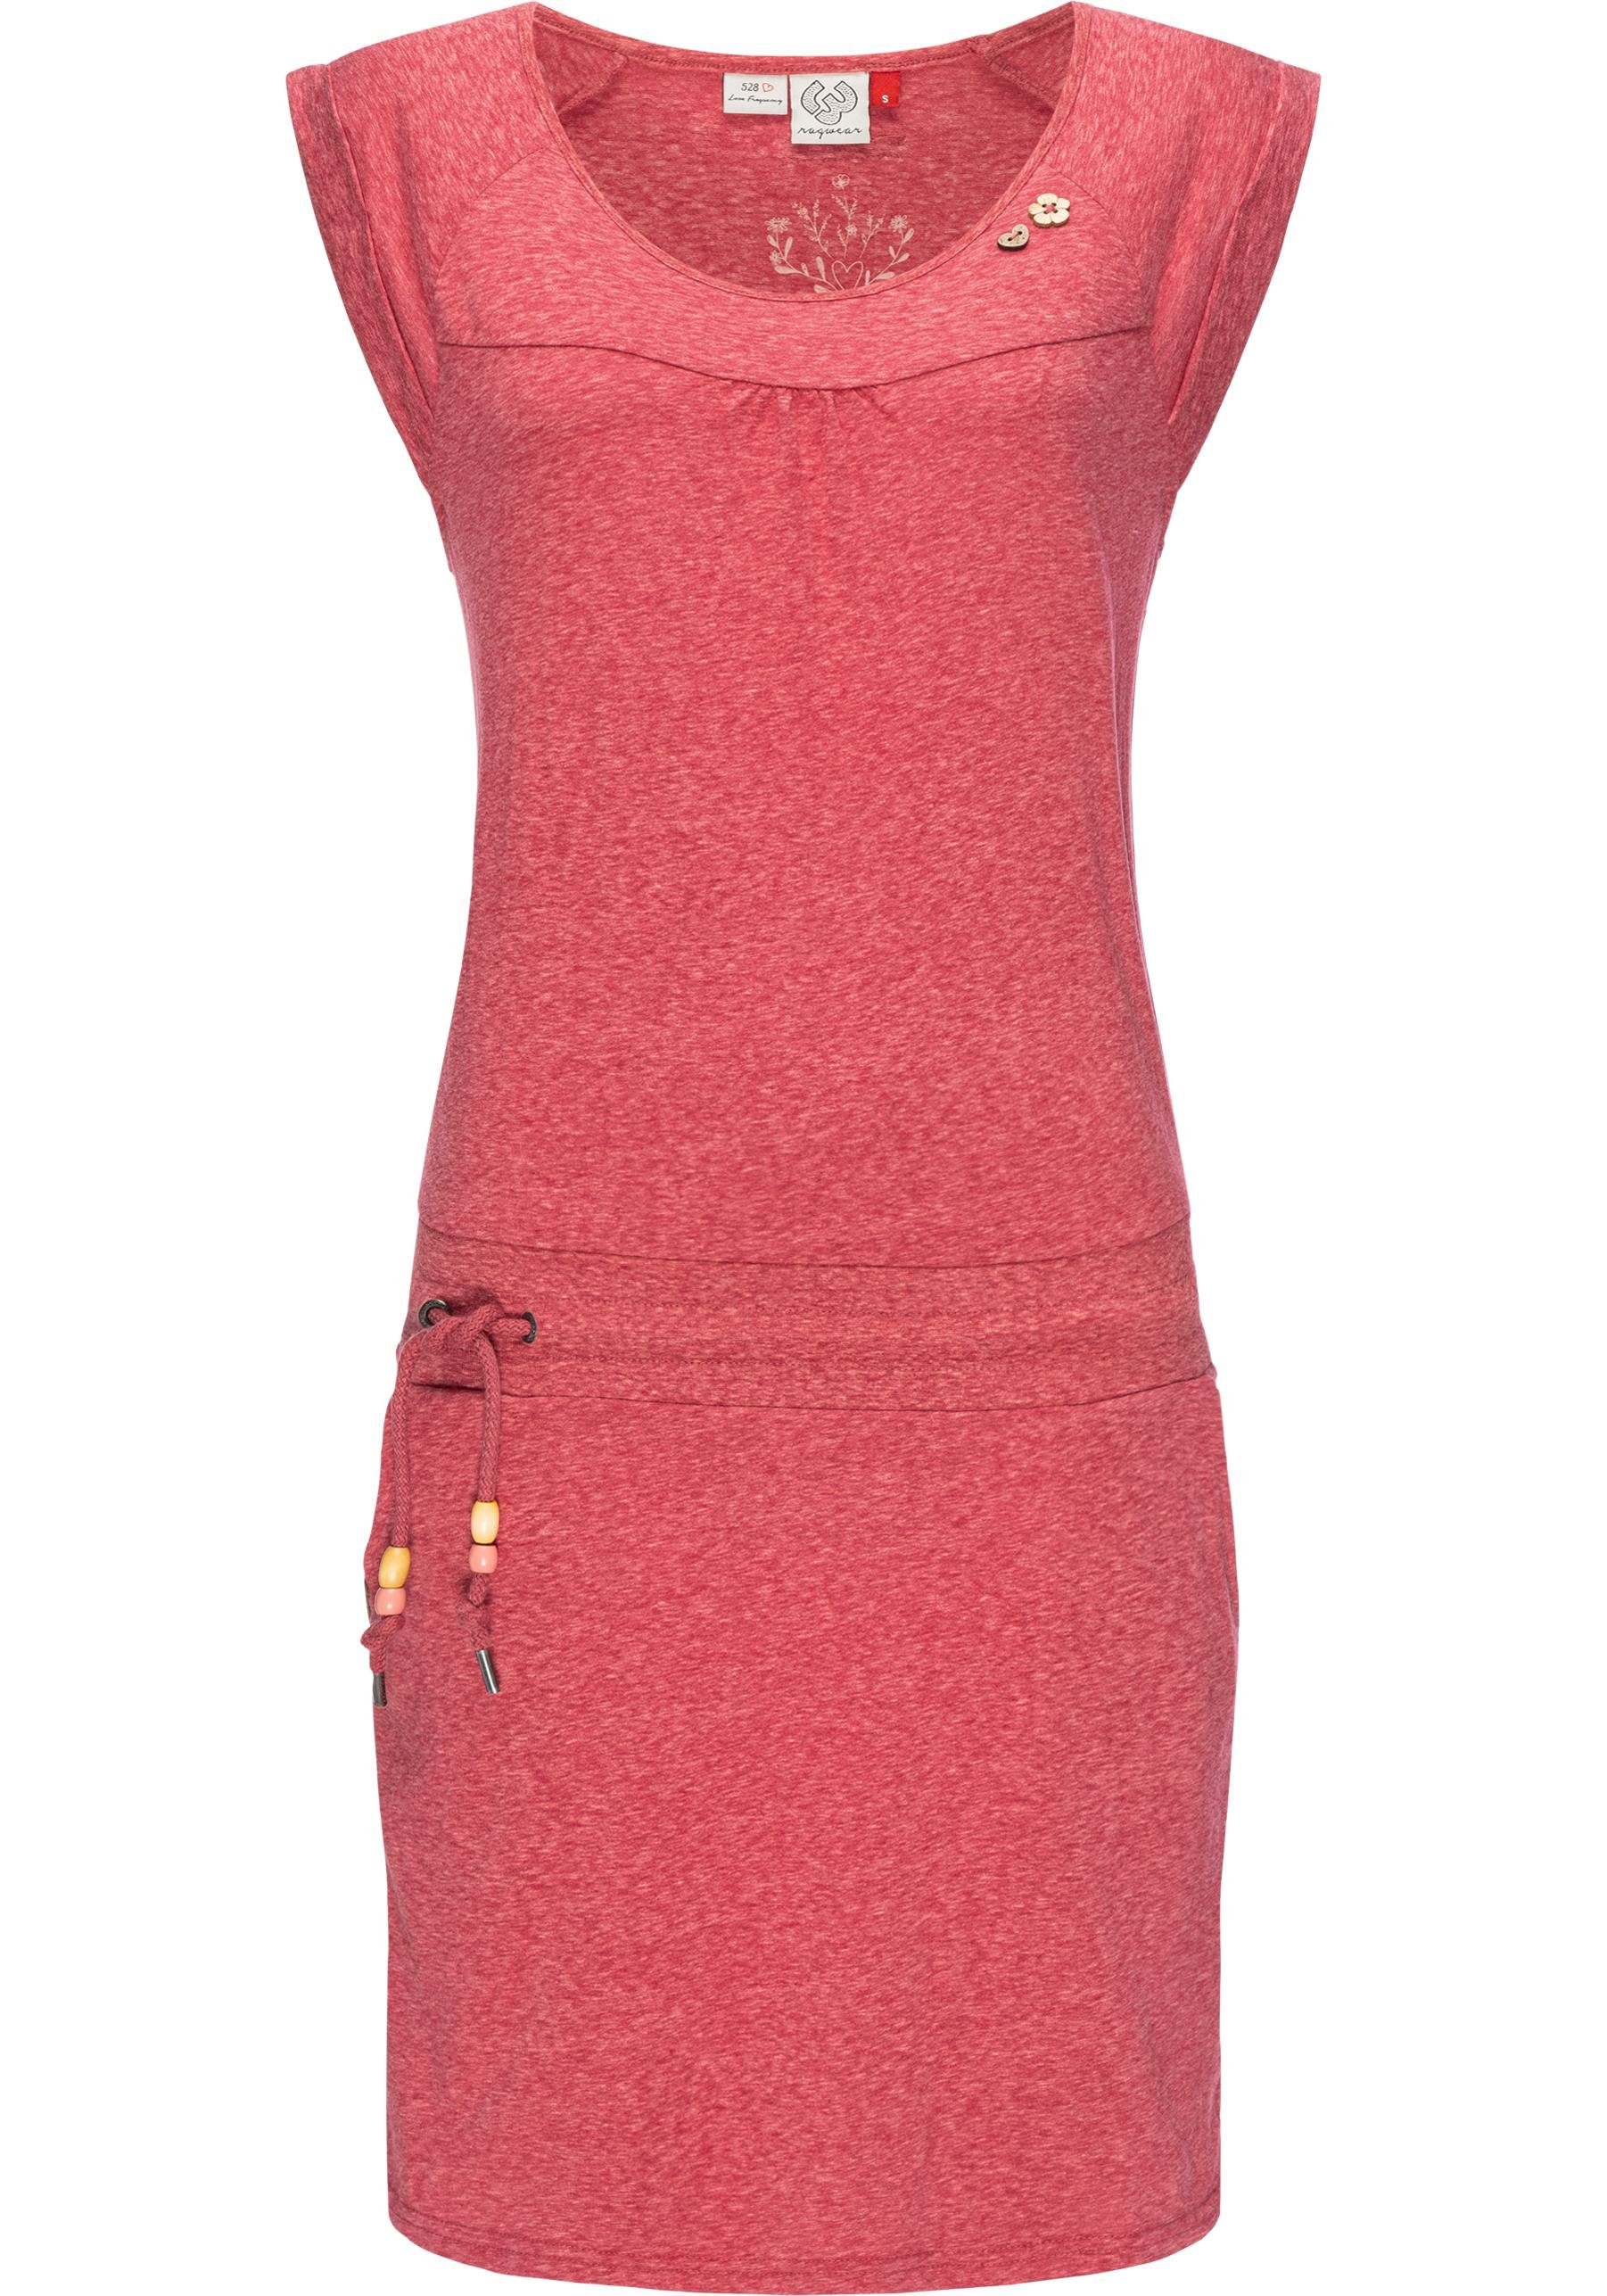 Ragwear Sommerkleid Penelope leichtes Baumwoll Kleid mit Print karminrot